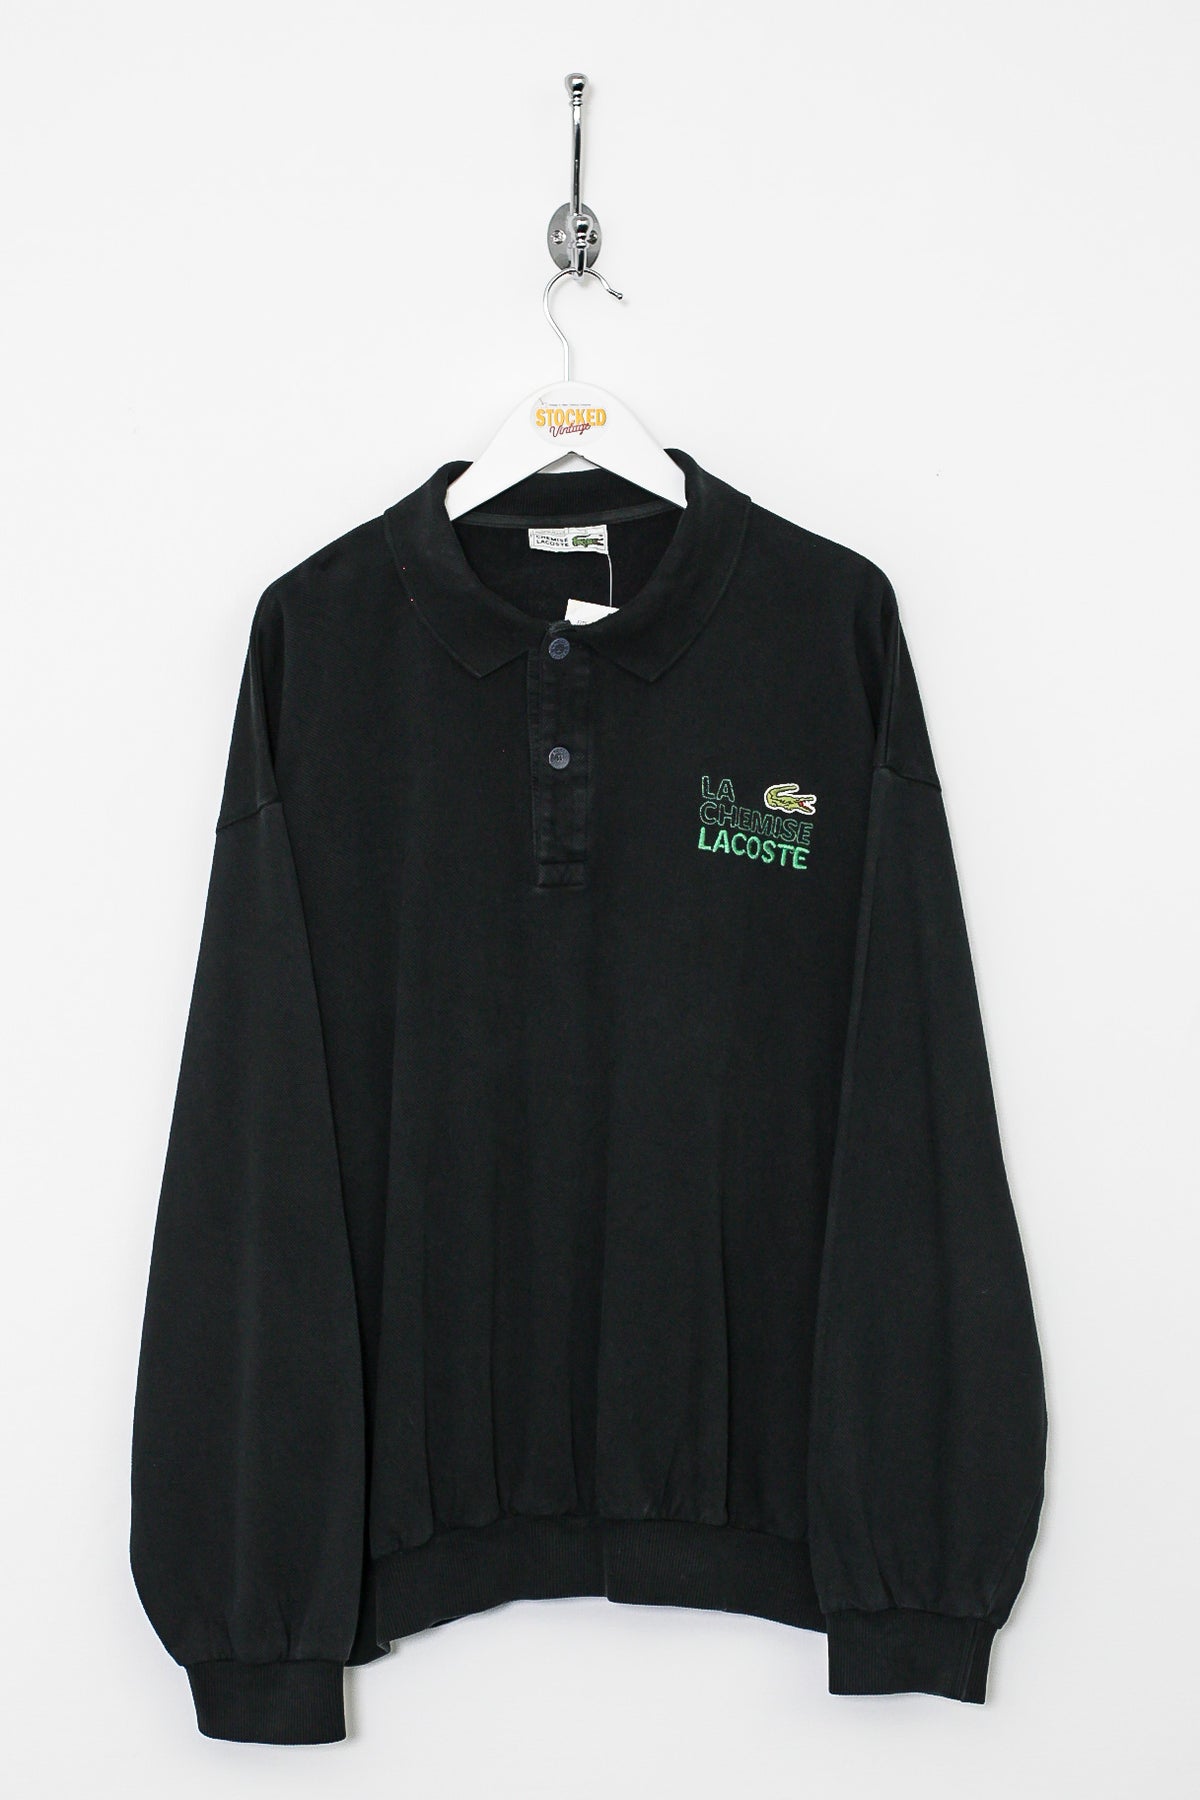 90s Lacoste Sweatshirt (L)